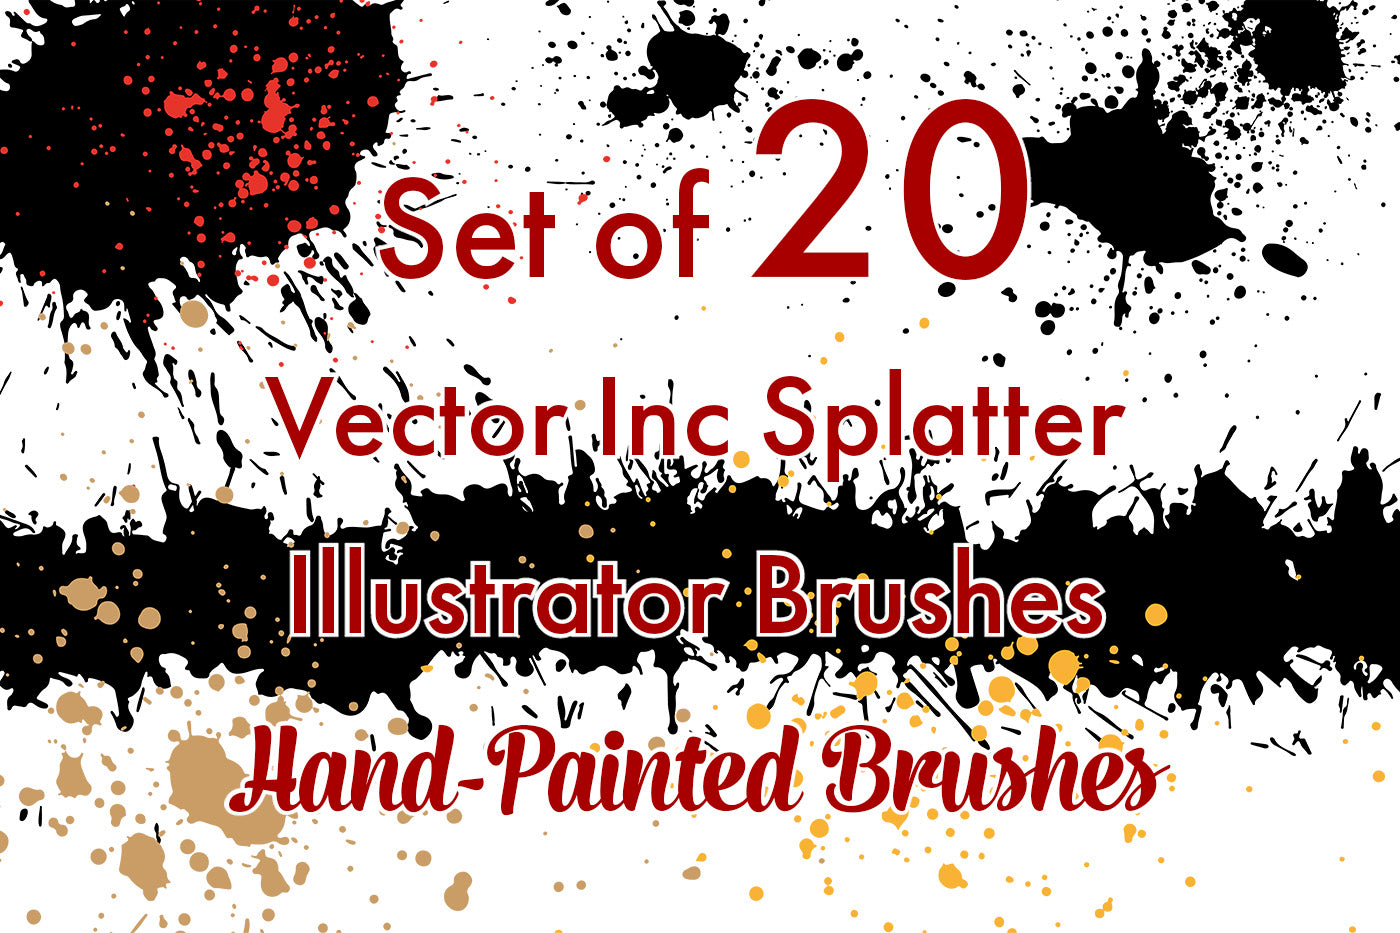 Vector Inc Splatter - Illustrator Brushes